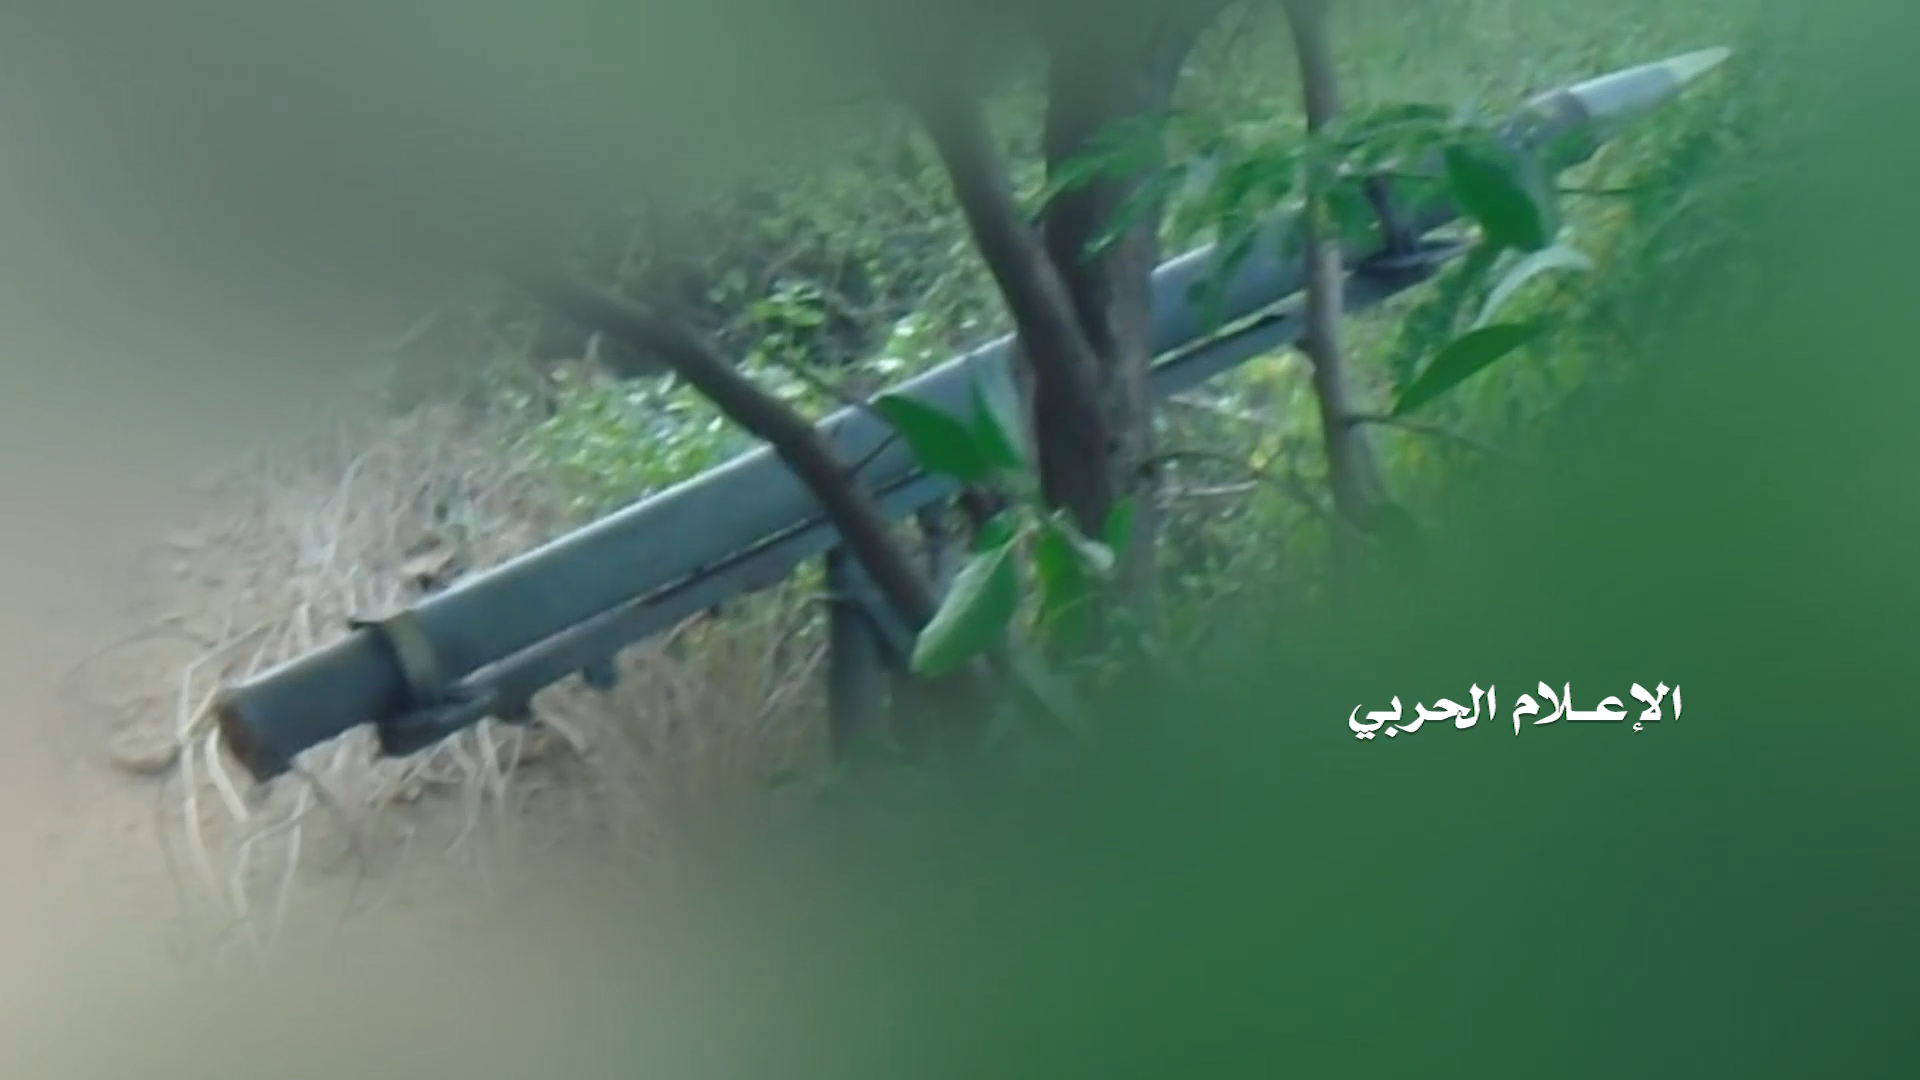 جيزان – اطلاق صاروخي واستهدافات مباشرة على تجمعات الجيش السعودي والمنافقين في عدد من المواقع بجيزان